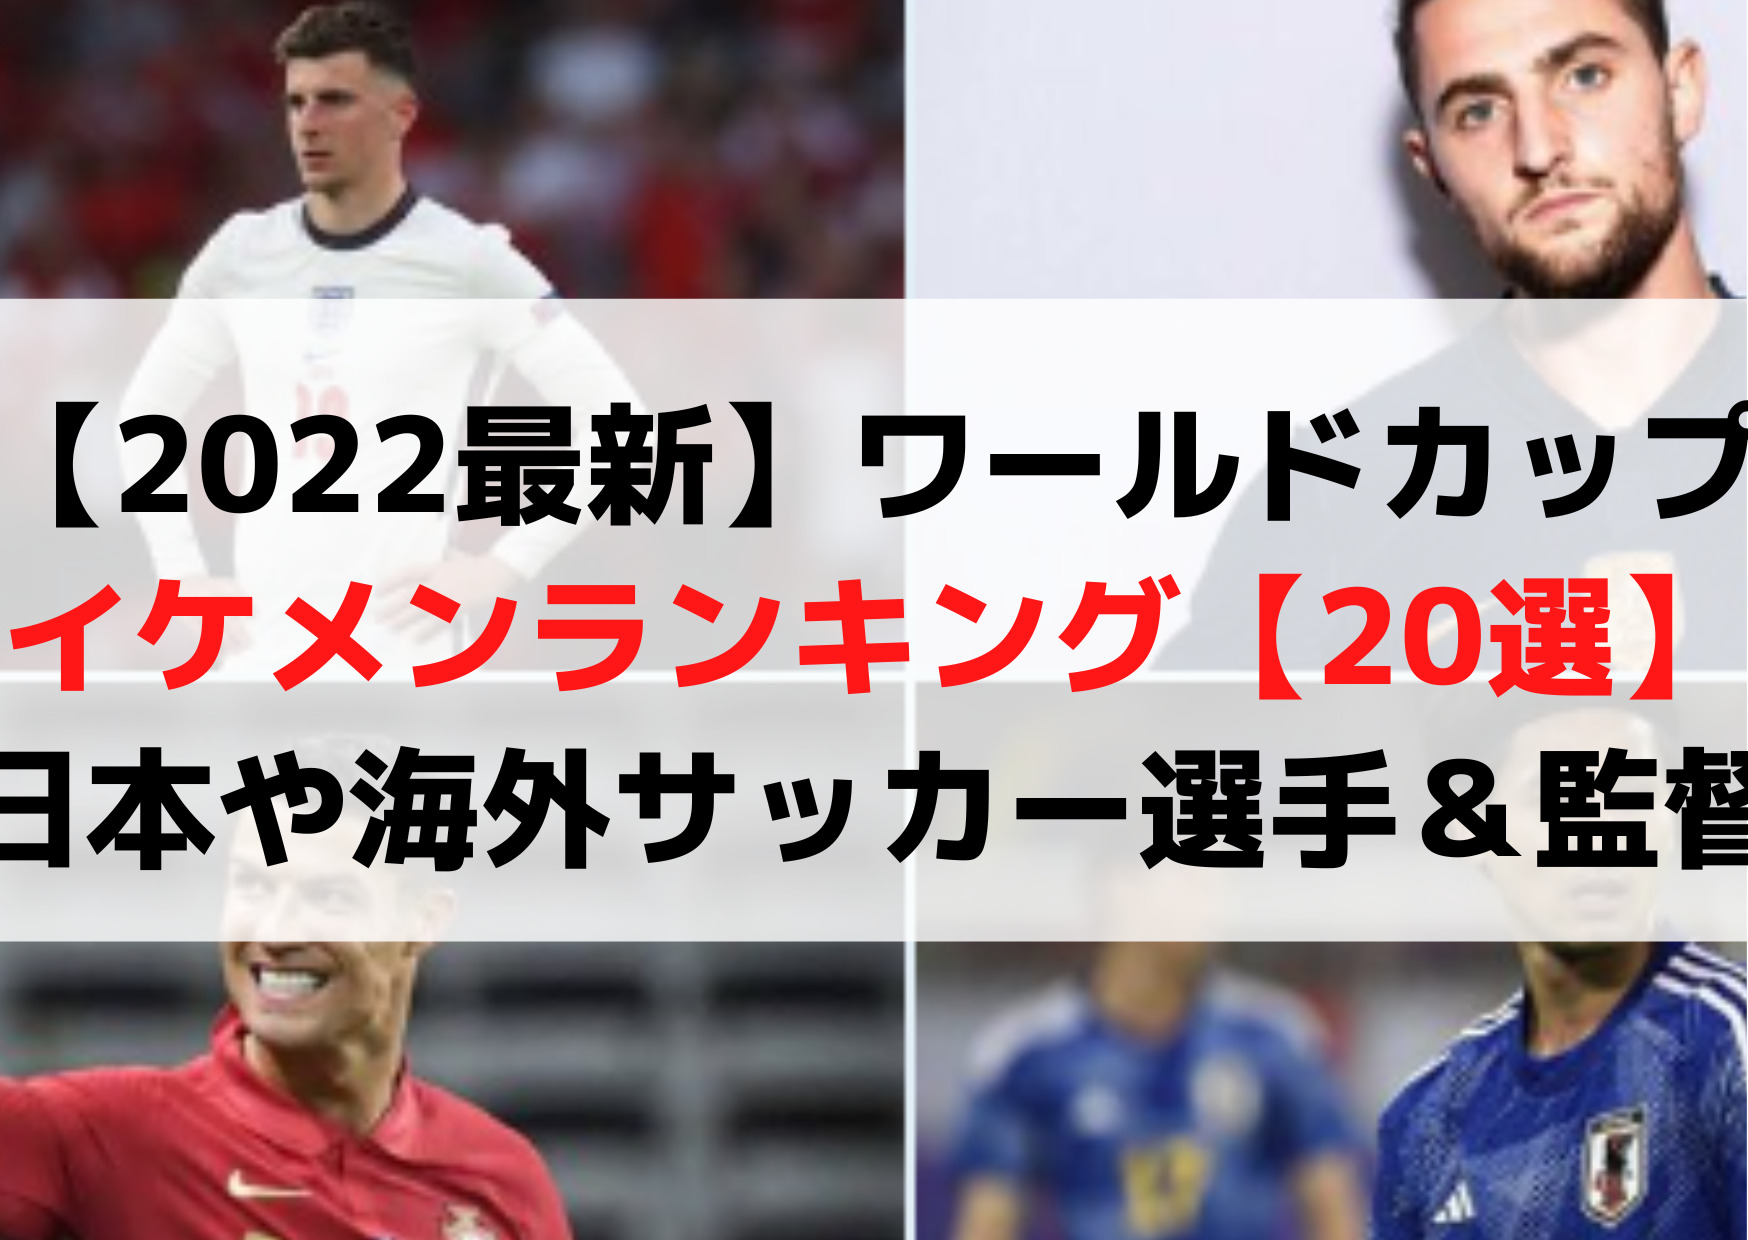 ワールドカップイケメン 22 サッカー選手 選 日本や韓国 海外 監督 Anser